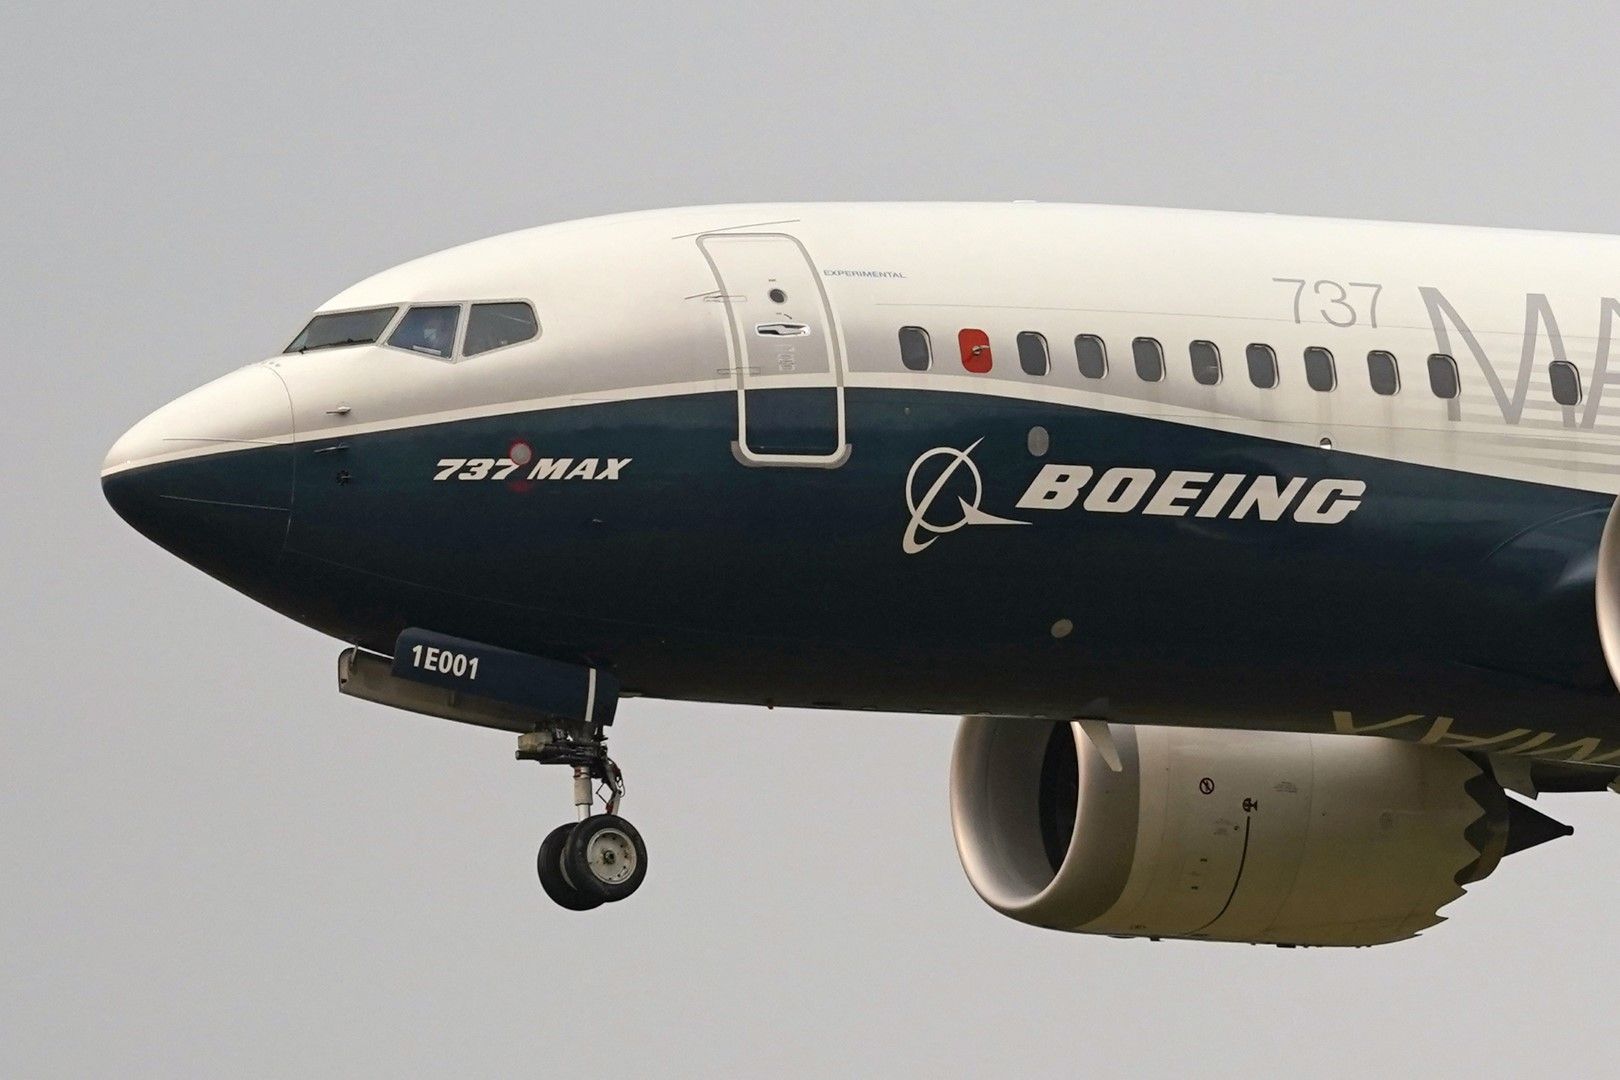 30 септември 2020 г., самолет Boeing 737 Max, пилотиран от шефа на Федералната авиационна администрация (FAA) Стив Диксън, се подготвя за кацане след тестов полет в Сиатъл